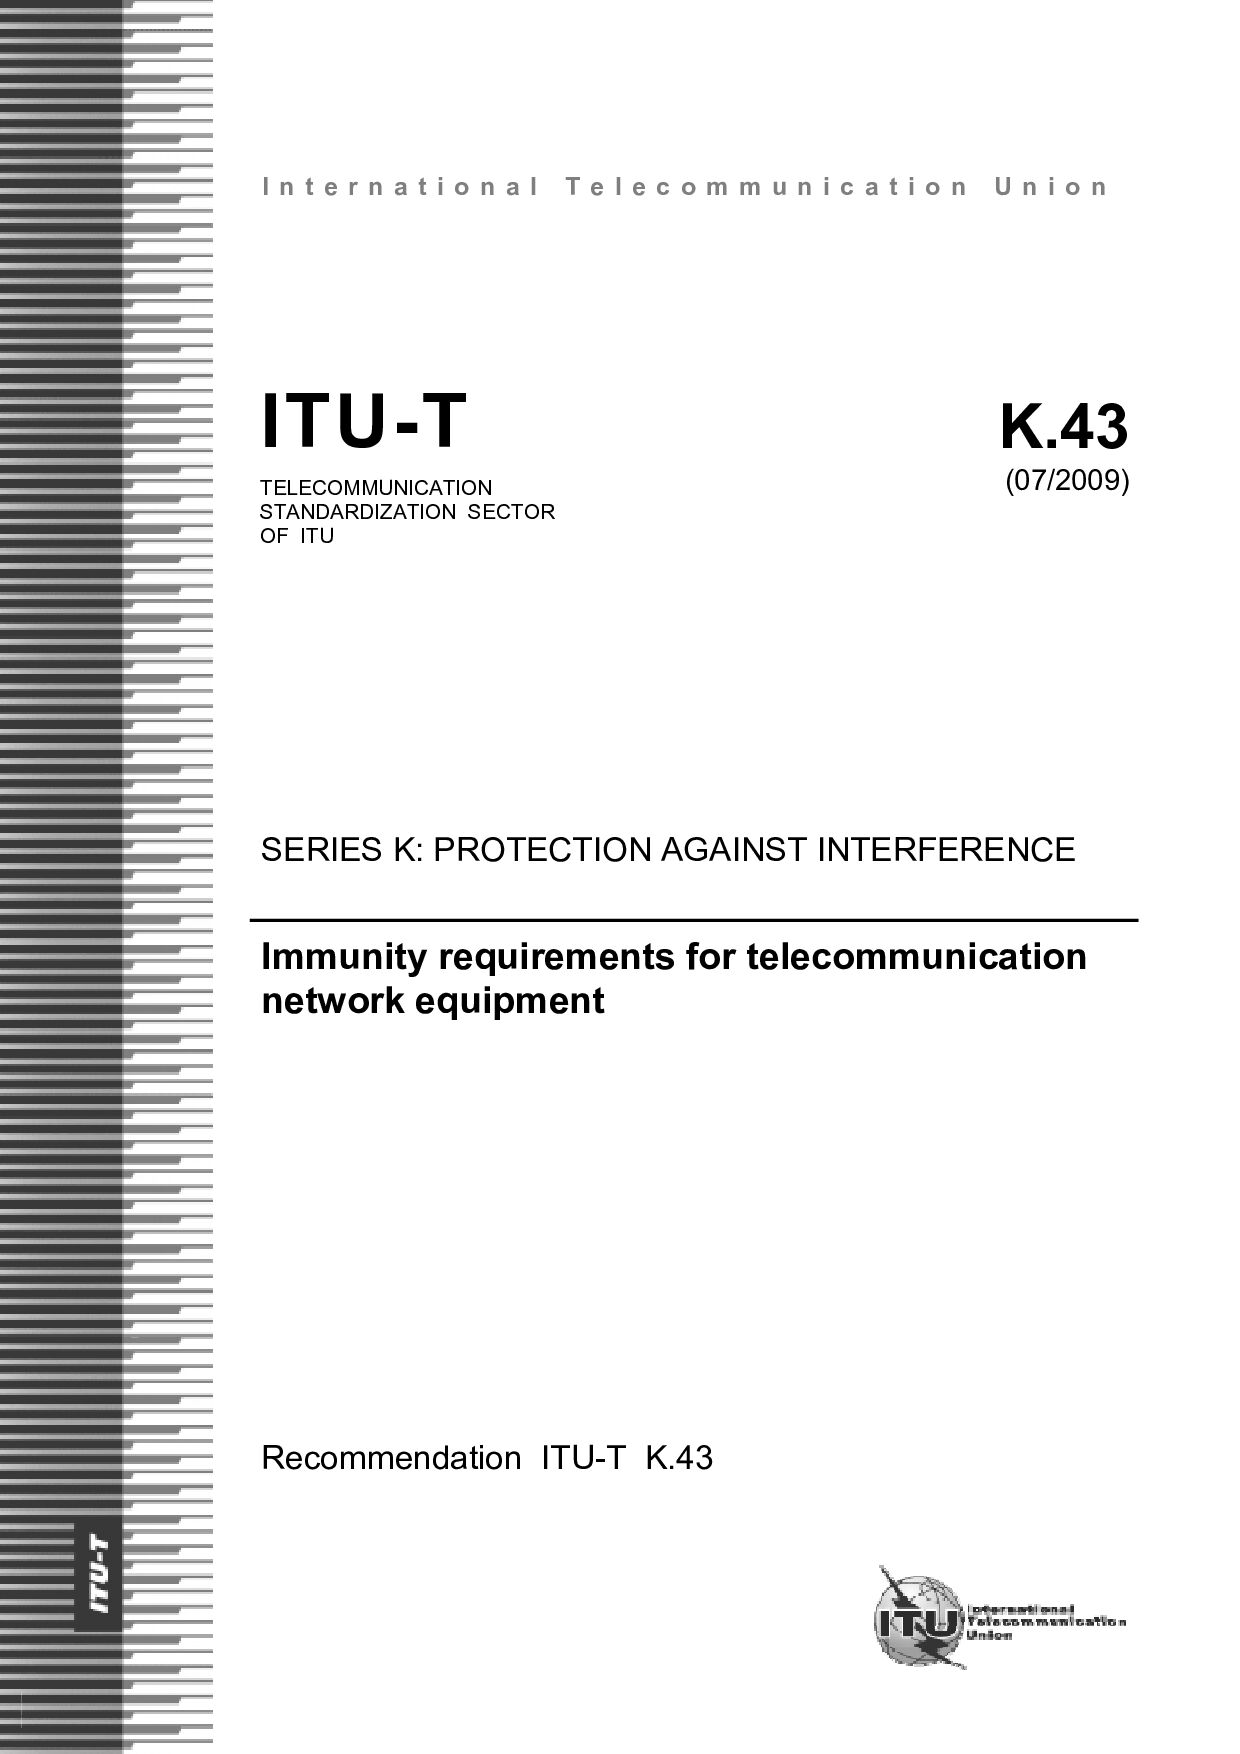 ITU-T K.43-2009